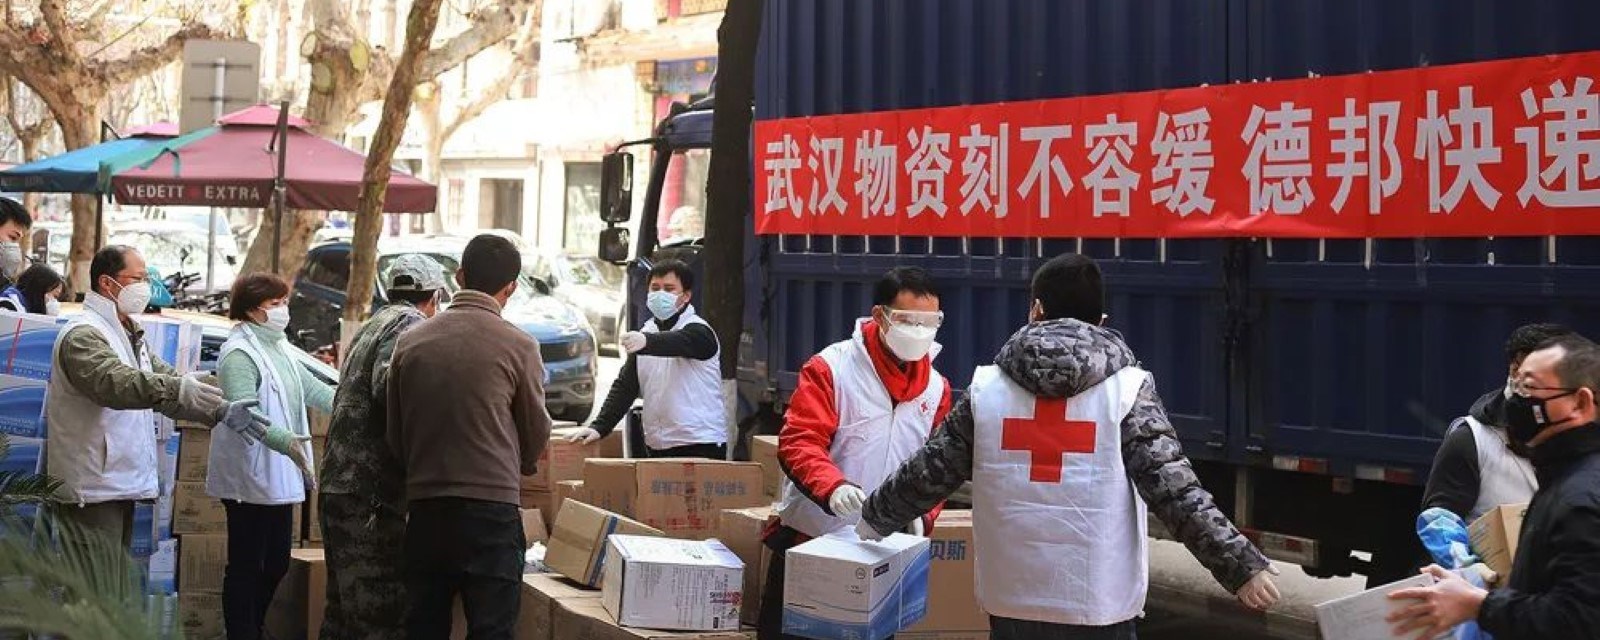 Røde Kors frivillige i Wuhan deler ut nødhjelp til folk